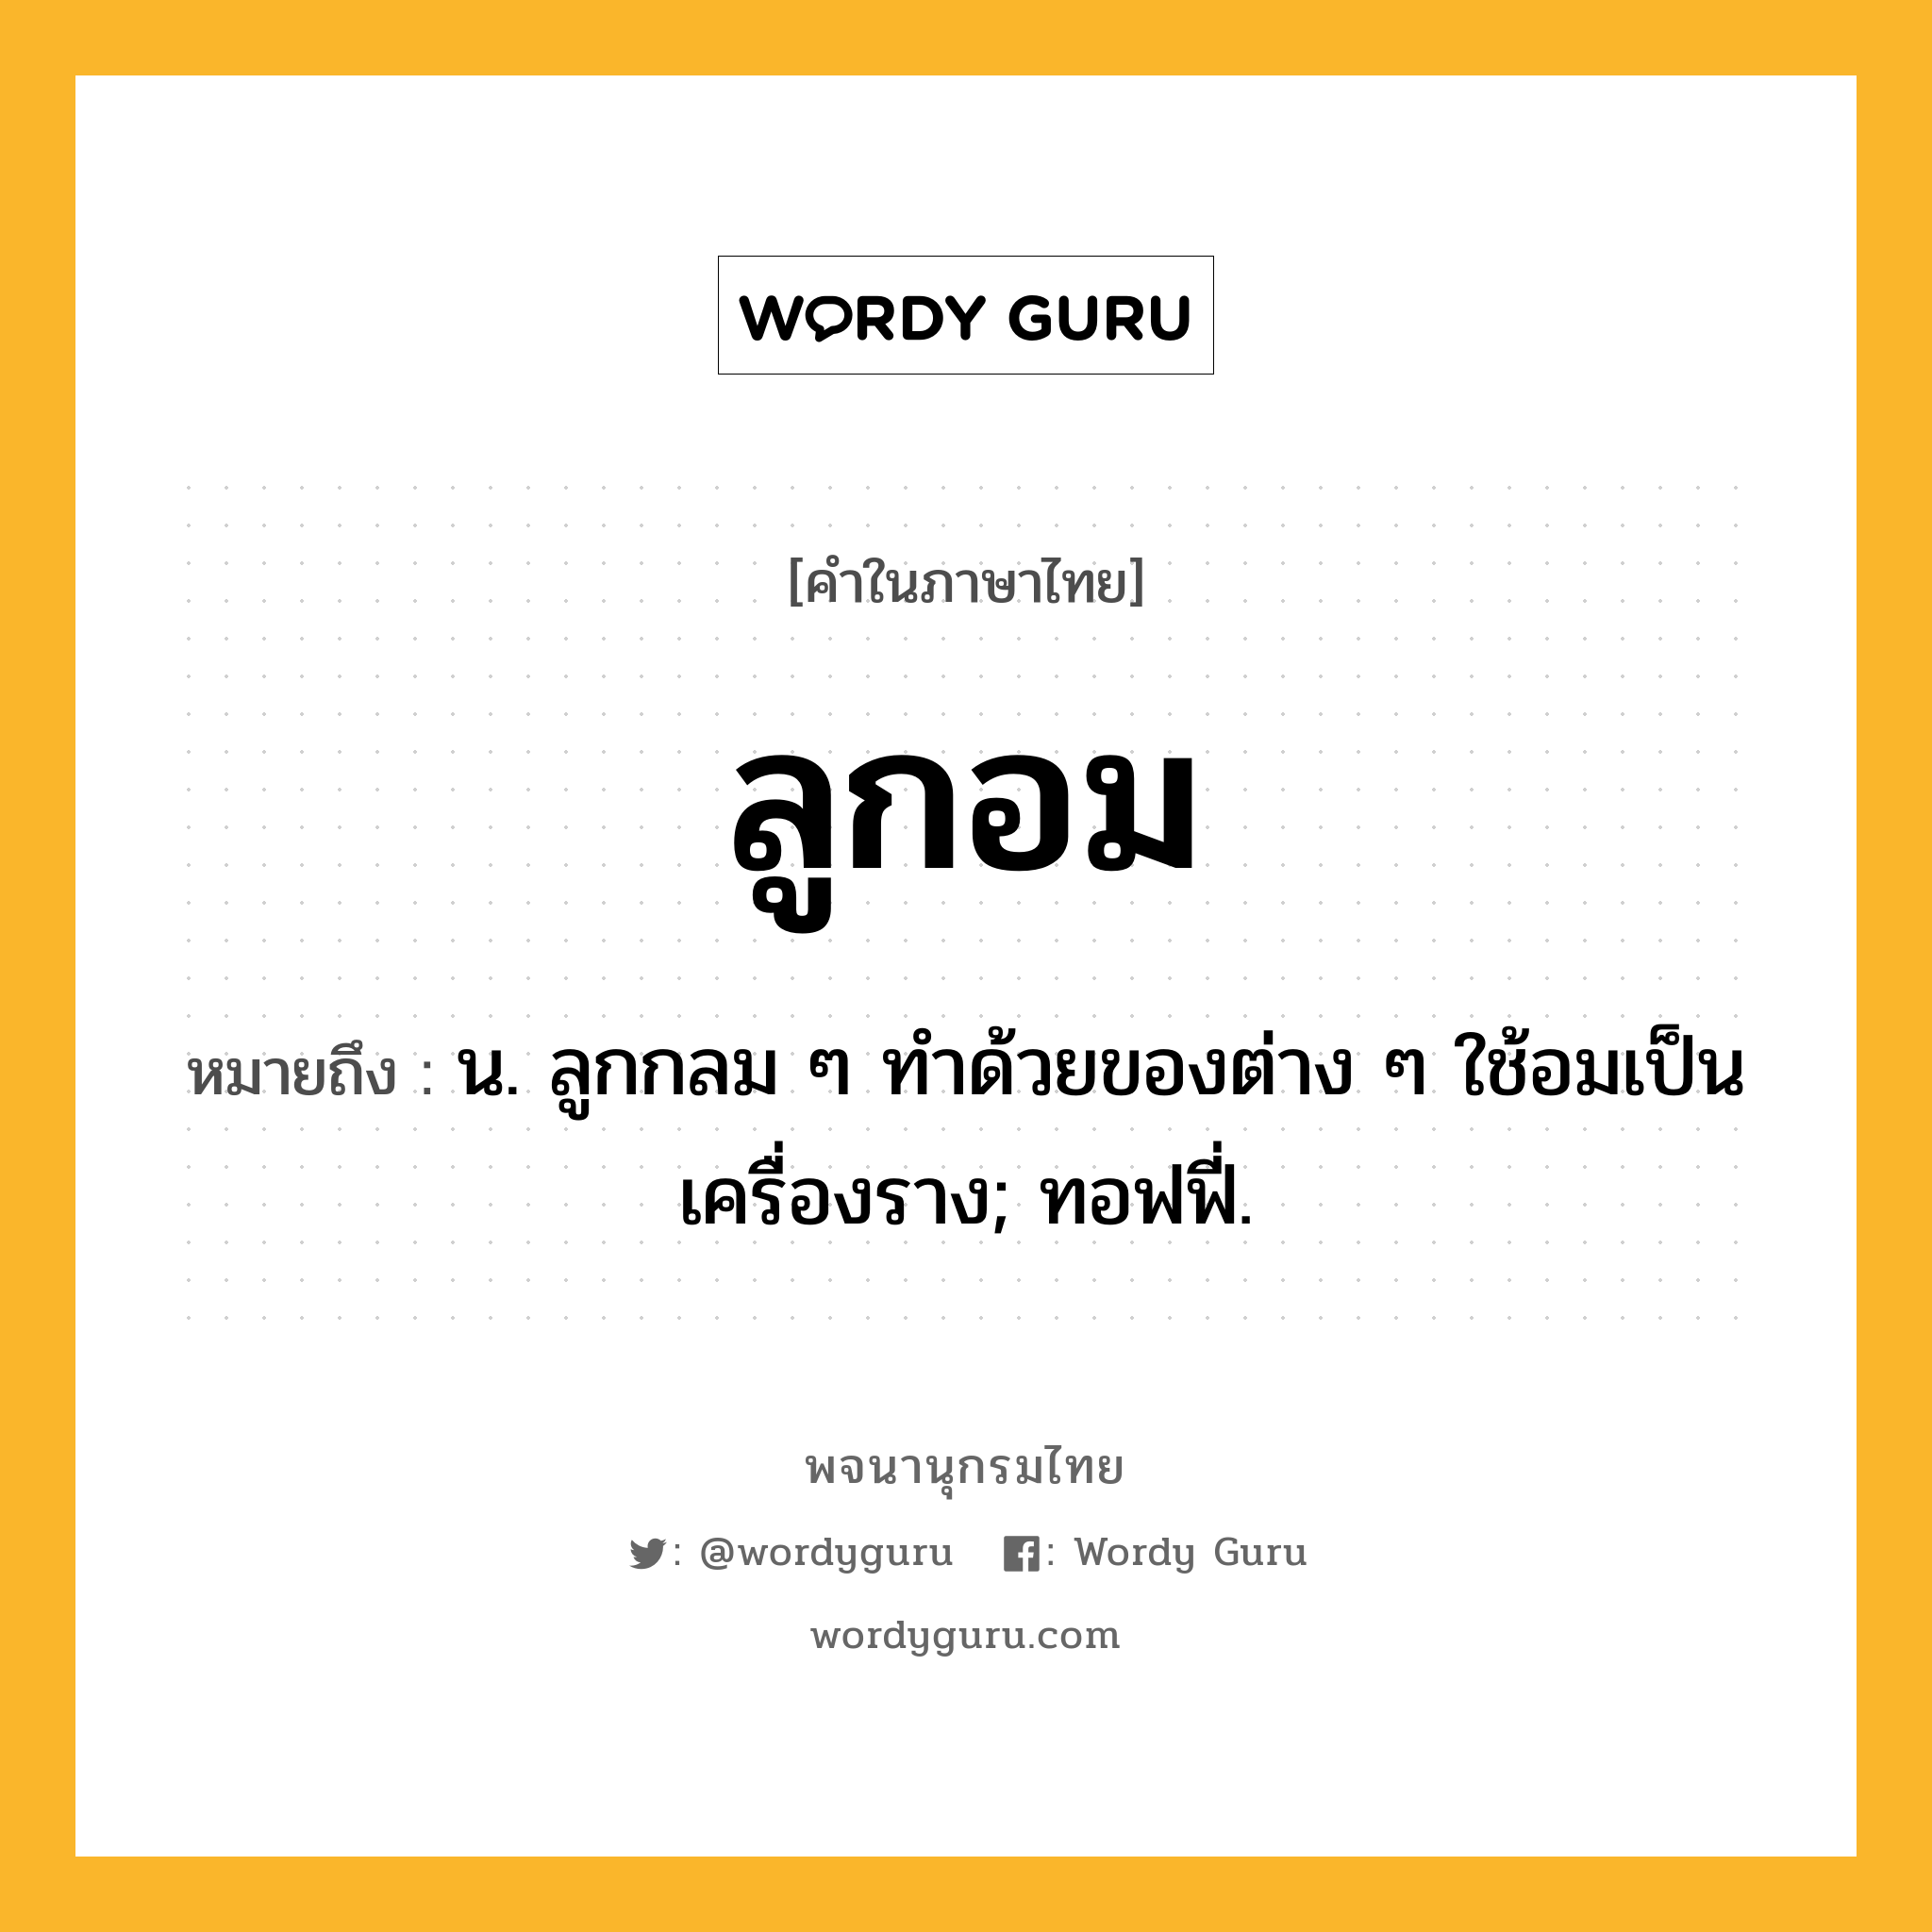 ลูกอม ความหมาย หมายถึงอะไร?, คำในภาษาไทย ลูกอม หมายถึง น. ลูกกลม ๆ ทําด้วยของต่าง ๆ ใช้อมเป็นเครื่องราง; ทอฟฟี่.